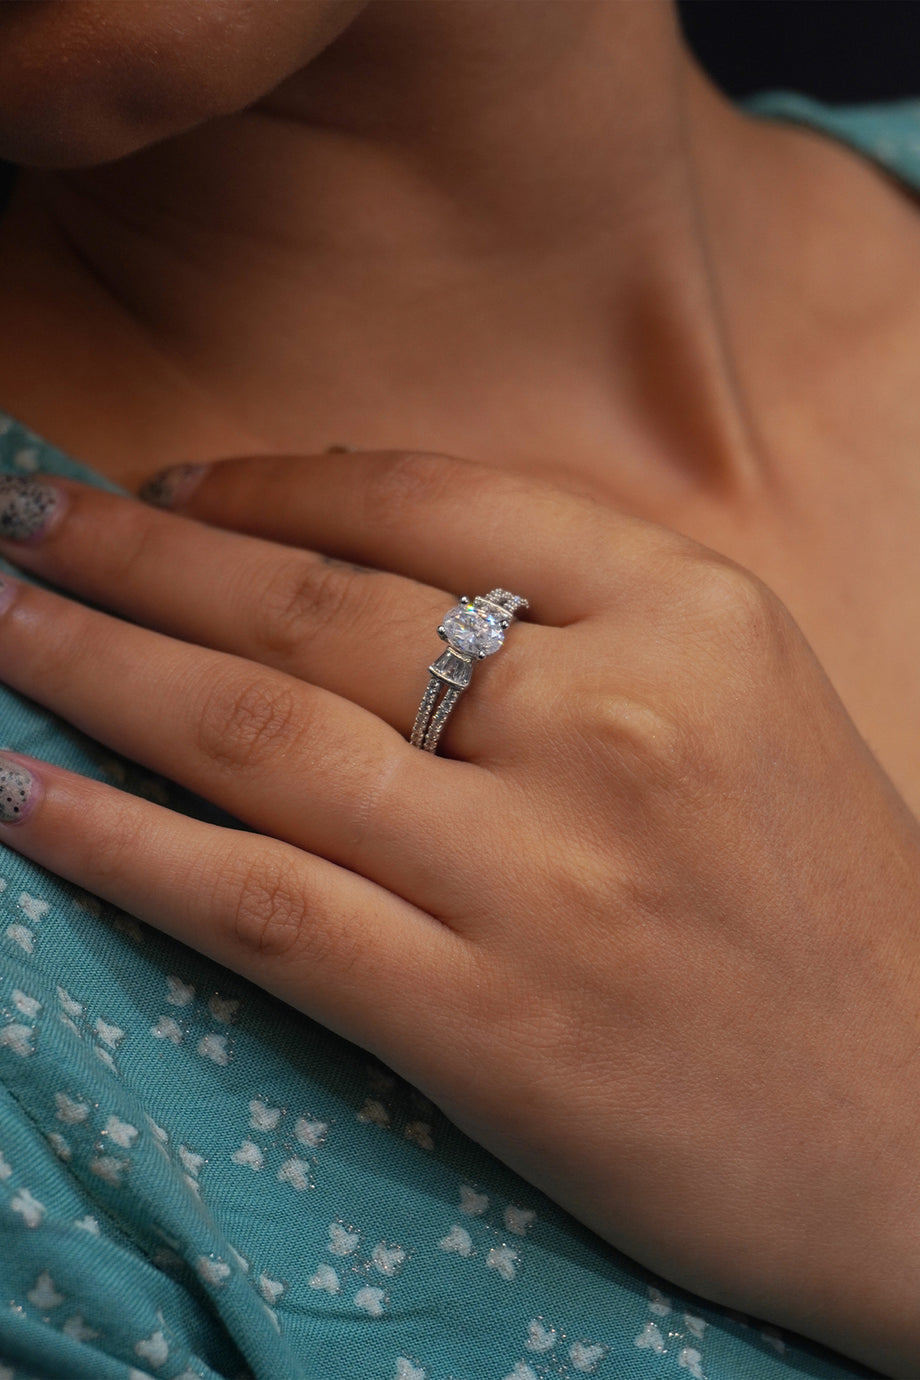 Buy Silver Rings For Men | Silver Rings For Women